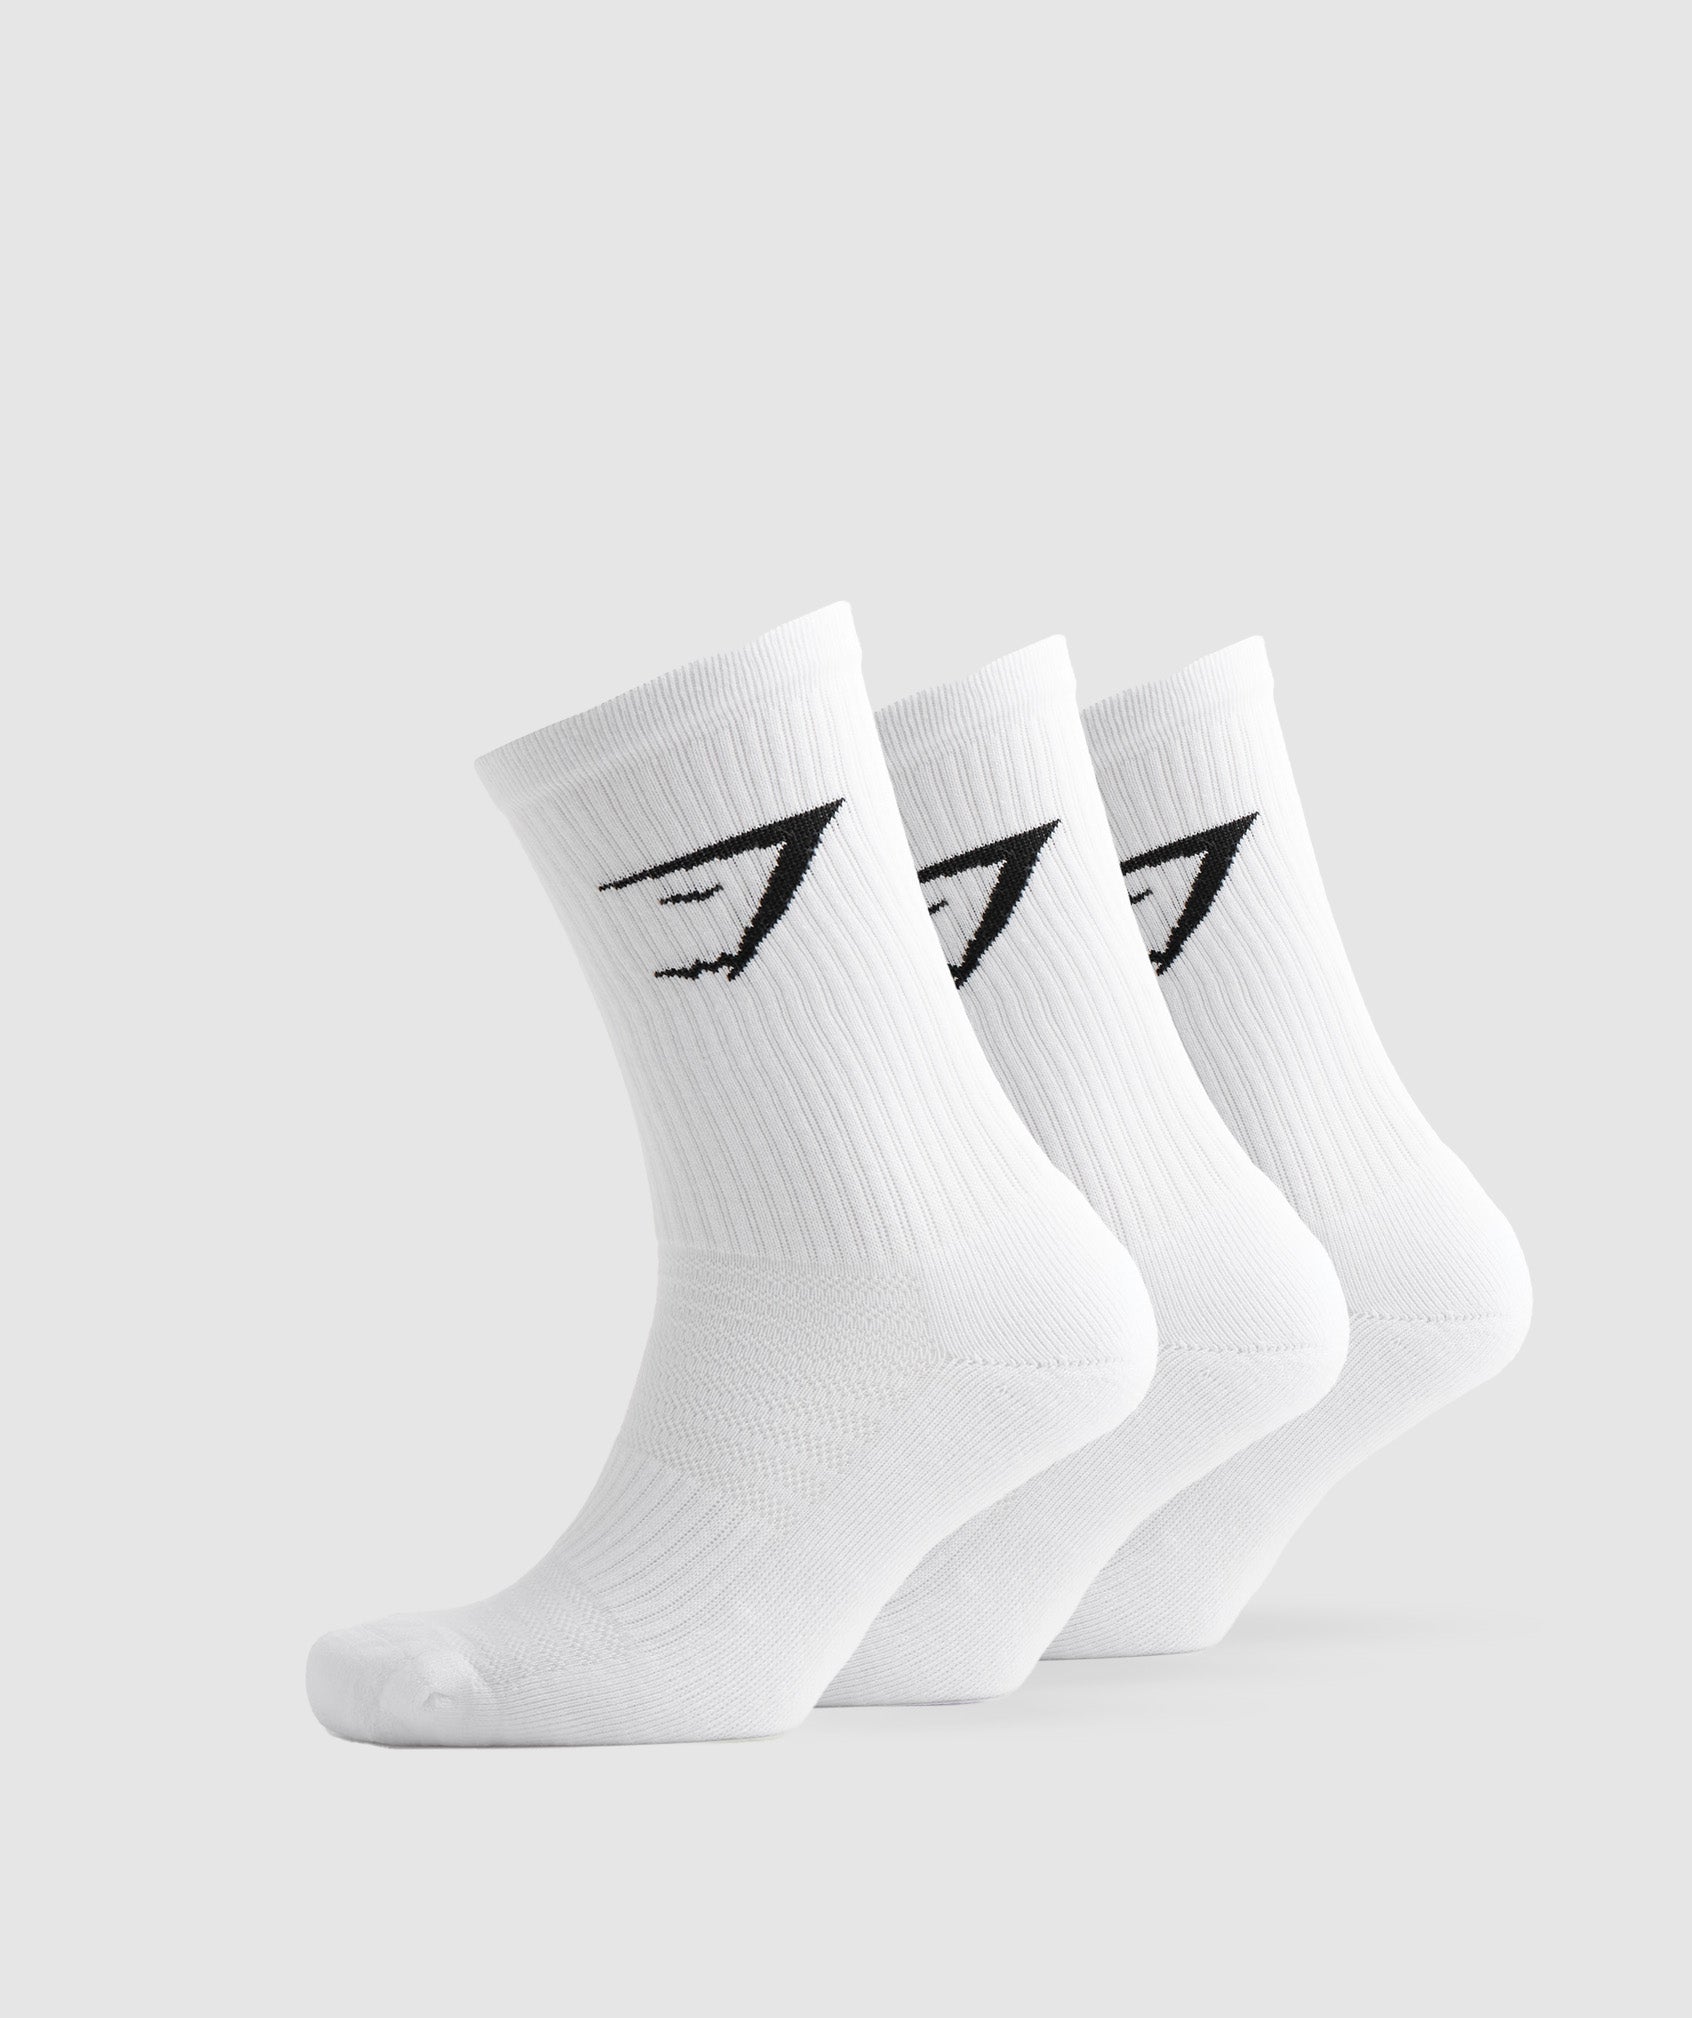 Gymshark Crew Socks 3pk - White/Pebble Grey/Desert Beige